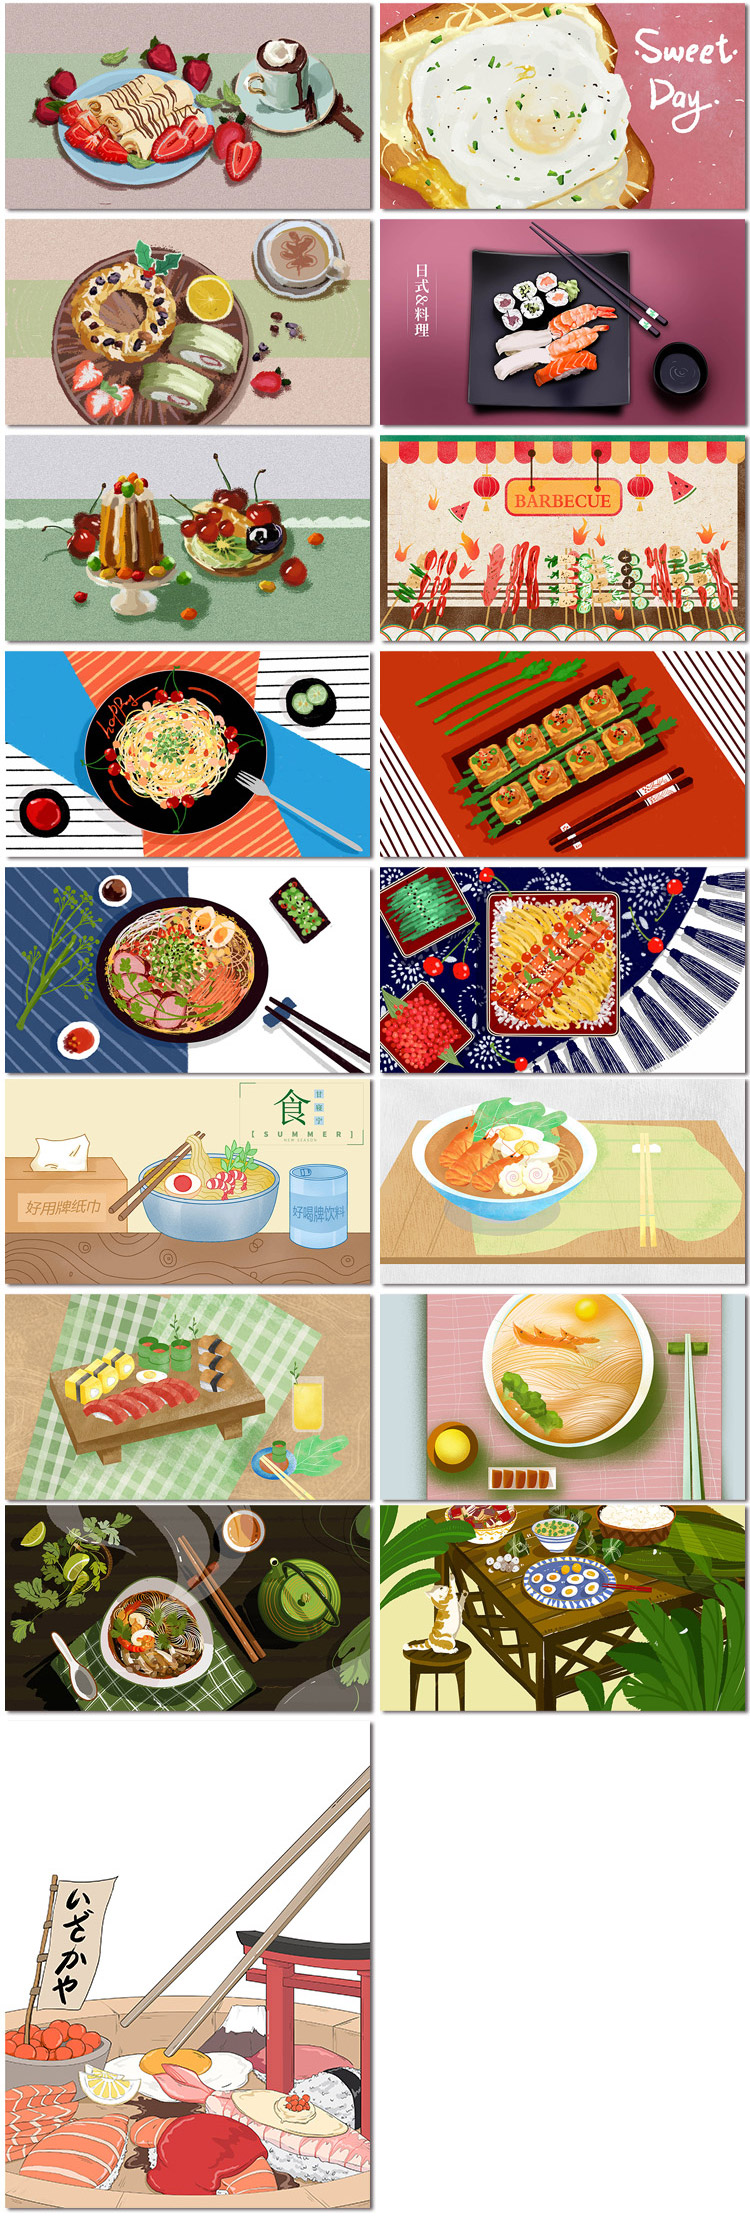 美食面食面条夜宵料理手绘烧烤餐厅排档插画海报psd素材模板设计